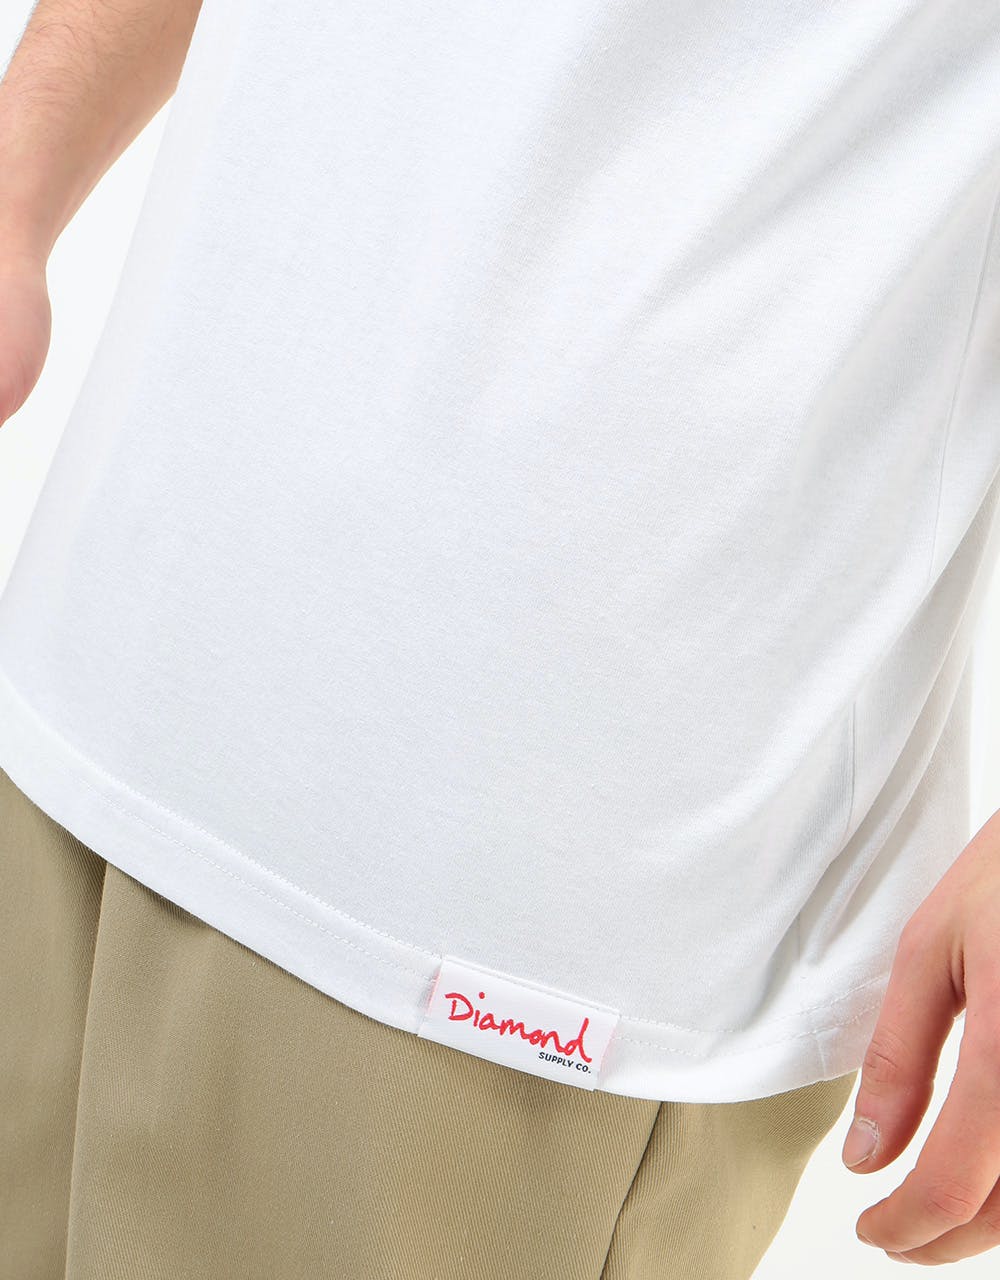 Diamond OG Script T-Shirt - White